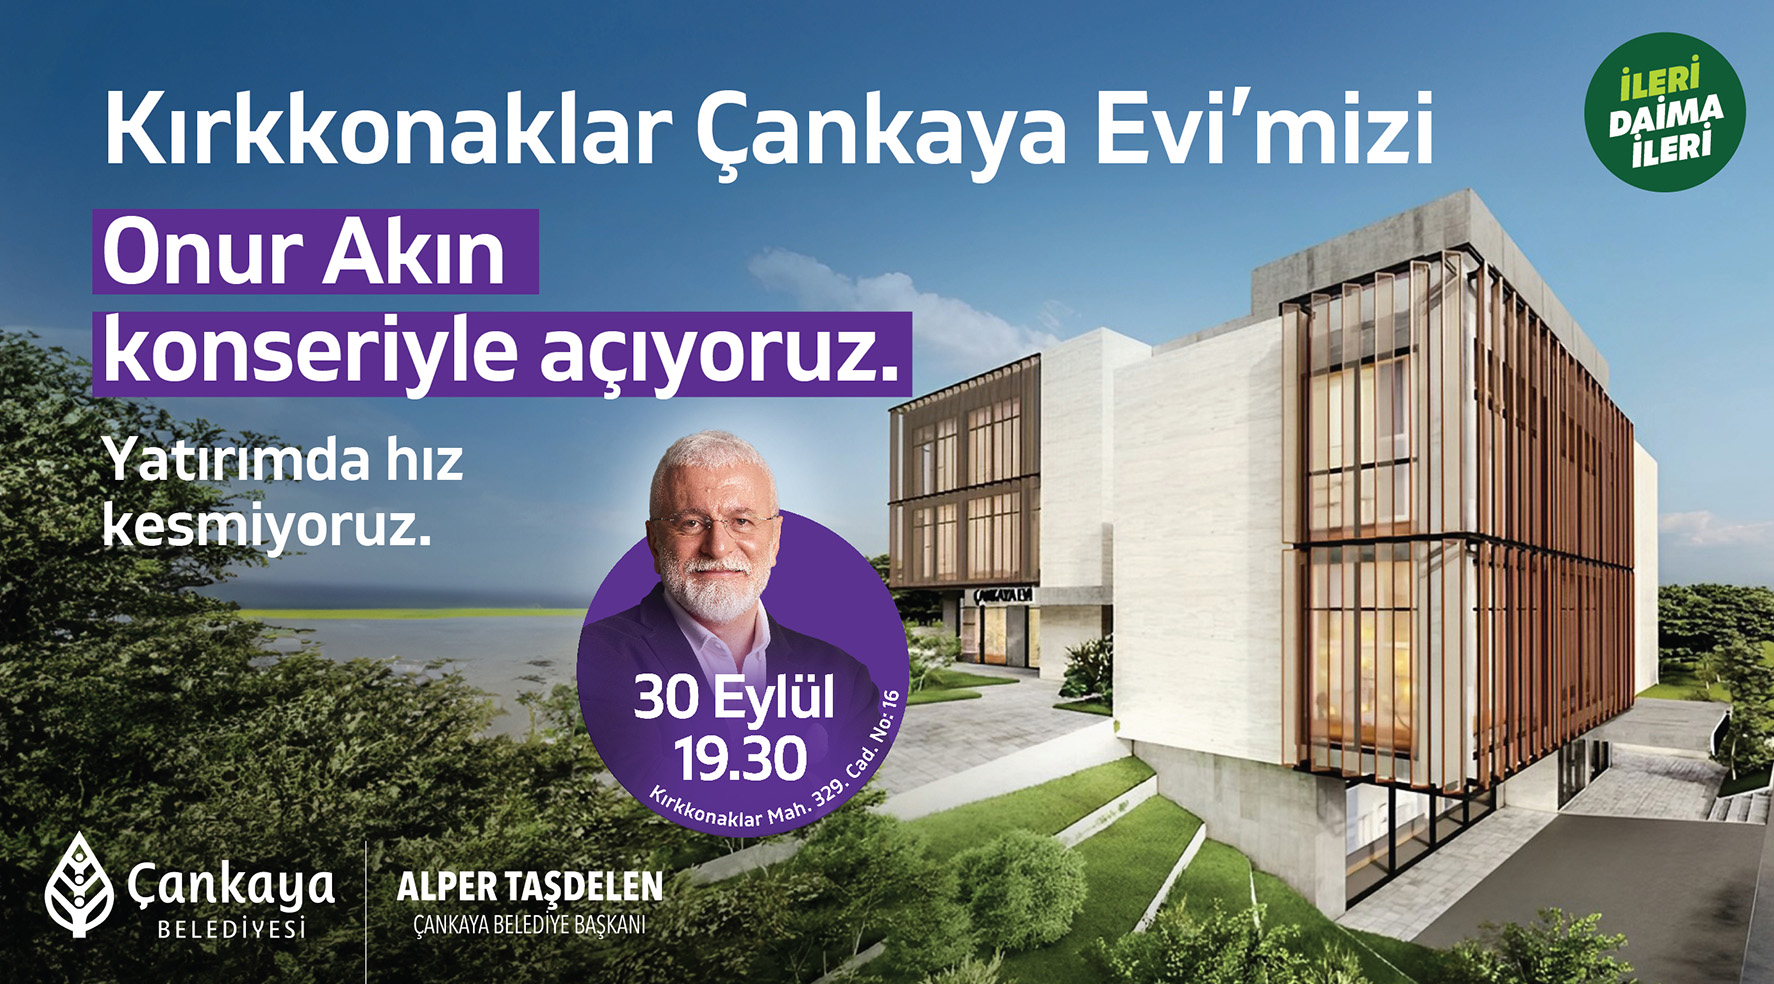 Ankara Haber: Kırkkonaklar Çankaya Evi Onur Akın Konseriyle Açılıyor!